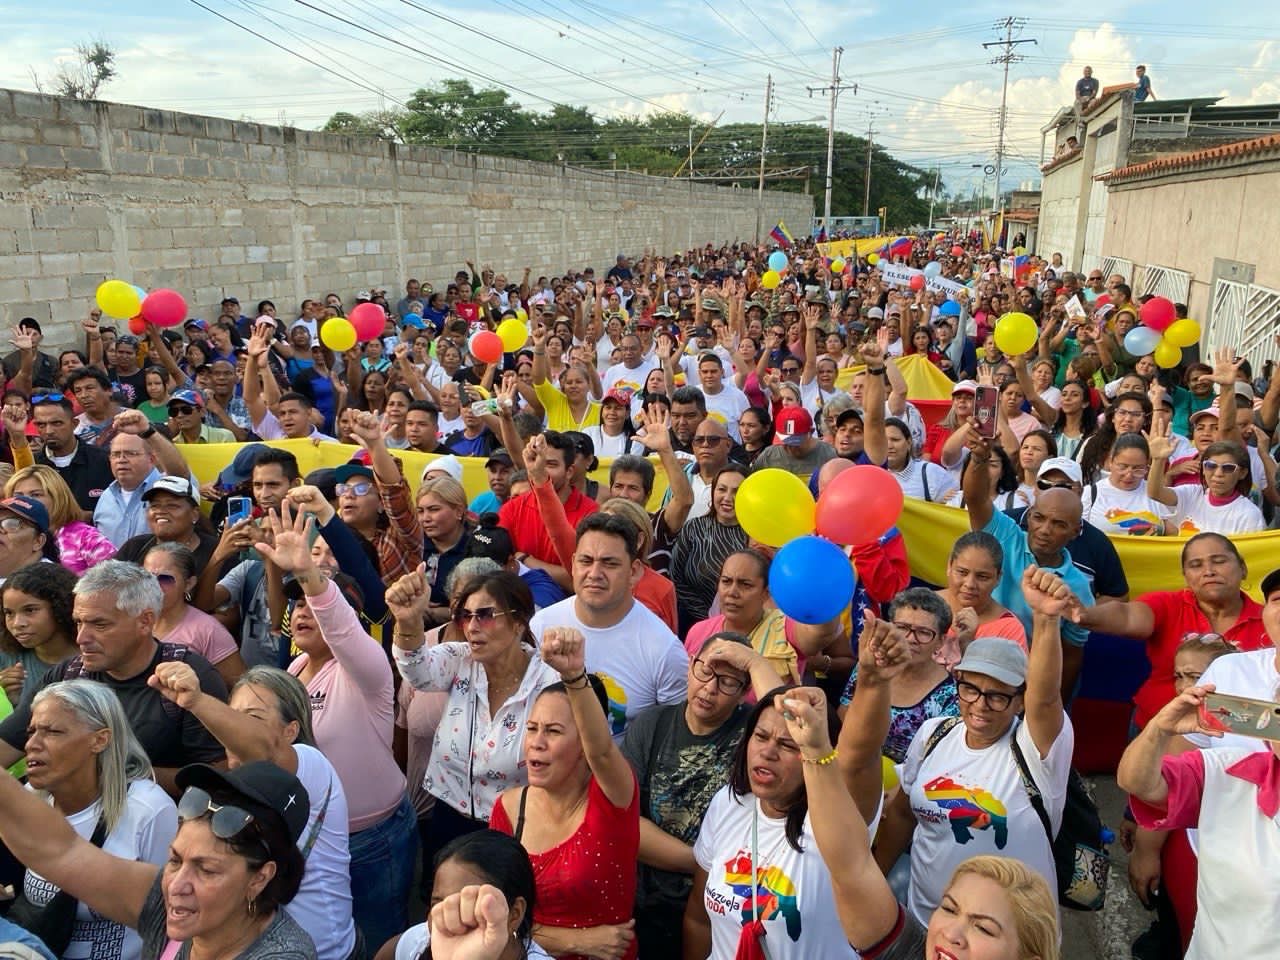 Essequibo referendum campaign begins in Venezuela